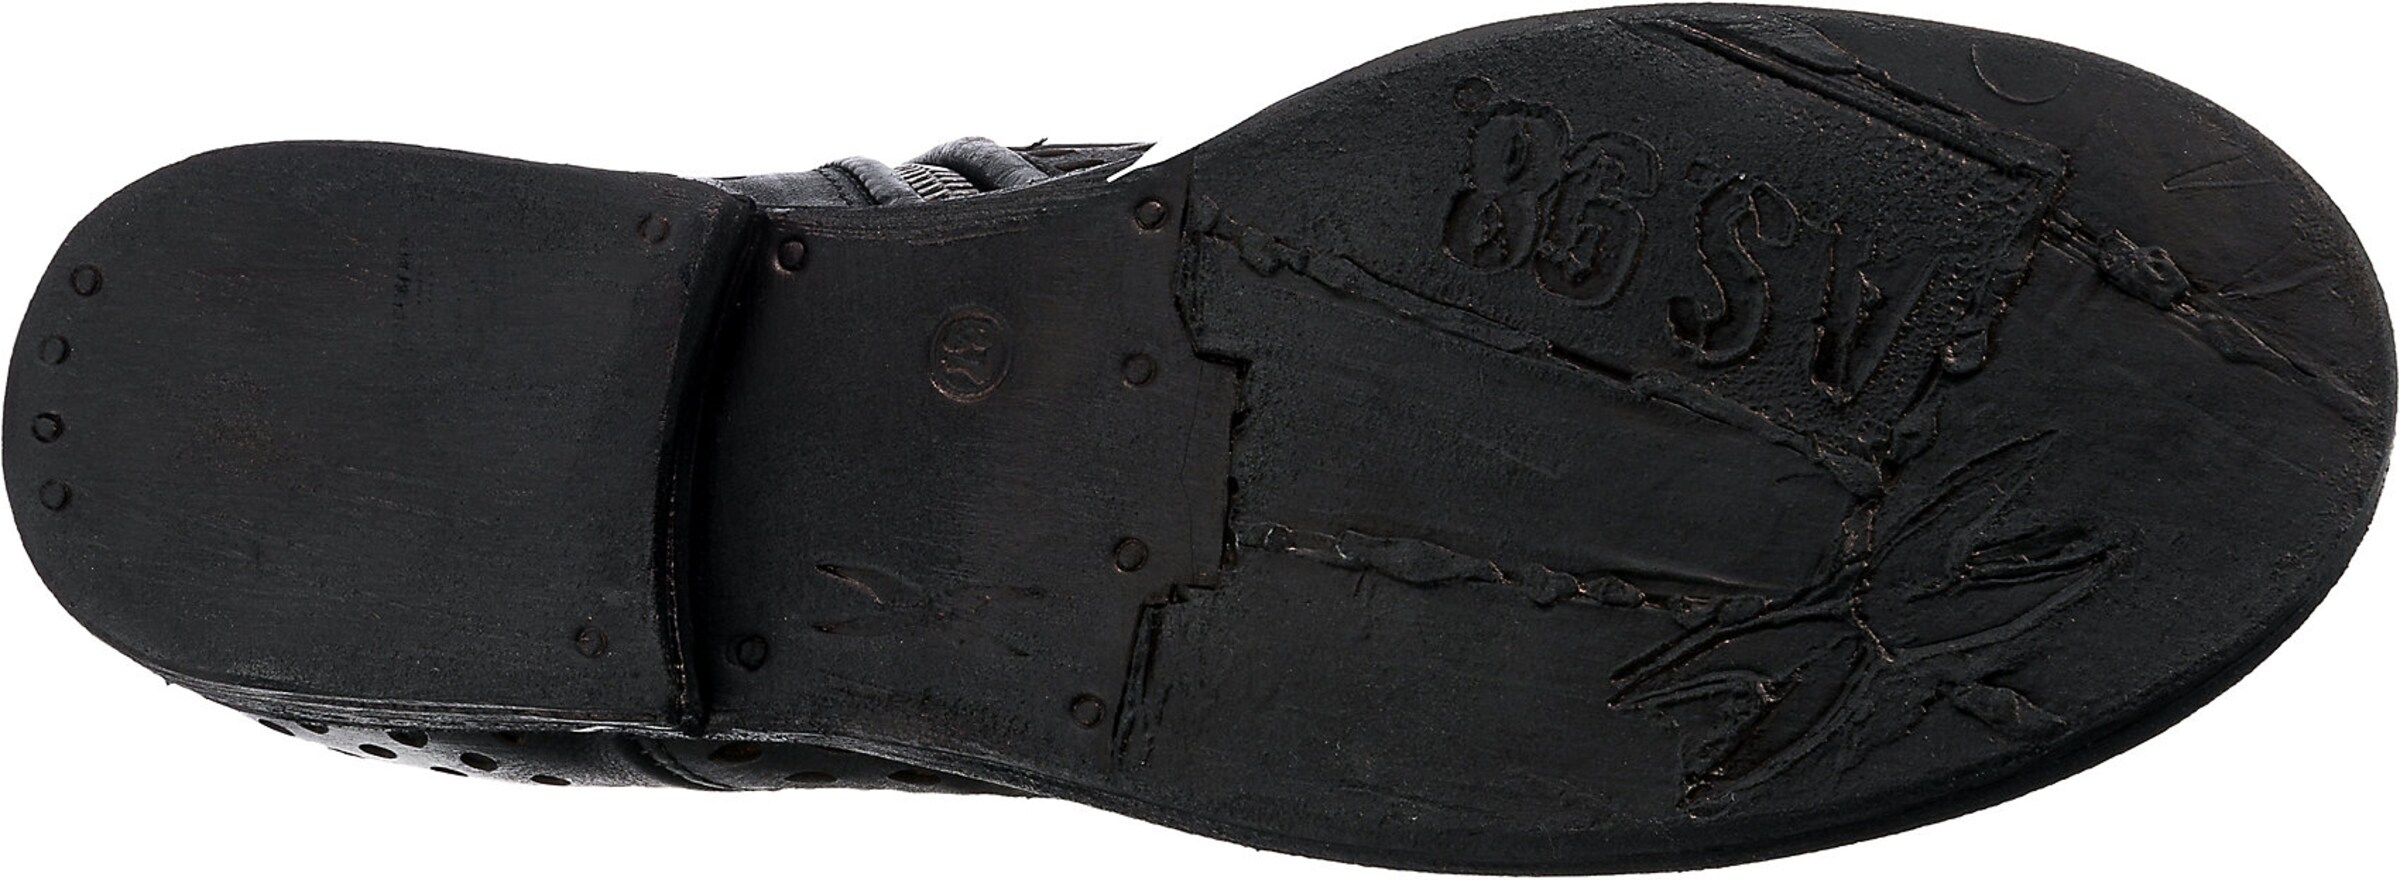 Chaussures Bottines à lacets Zeport A.S.98 en Noir 